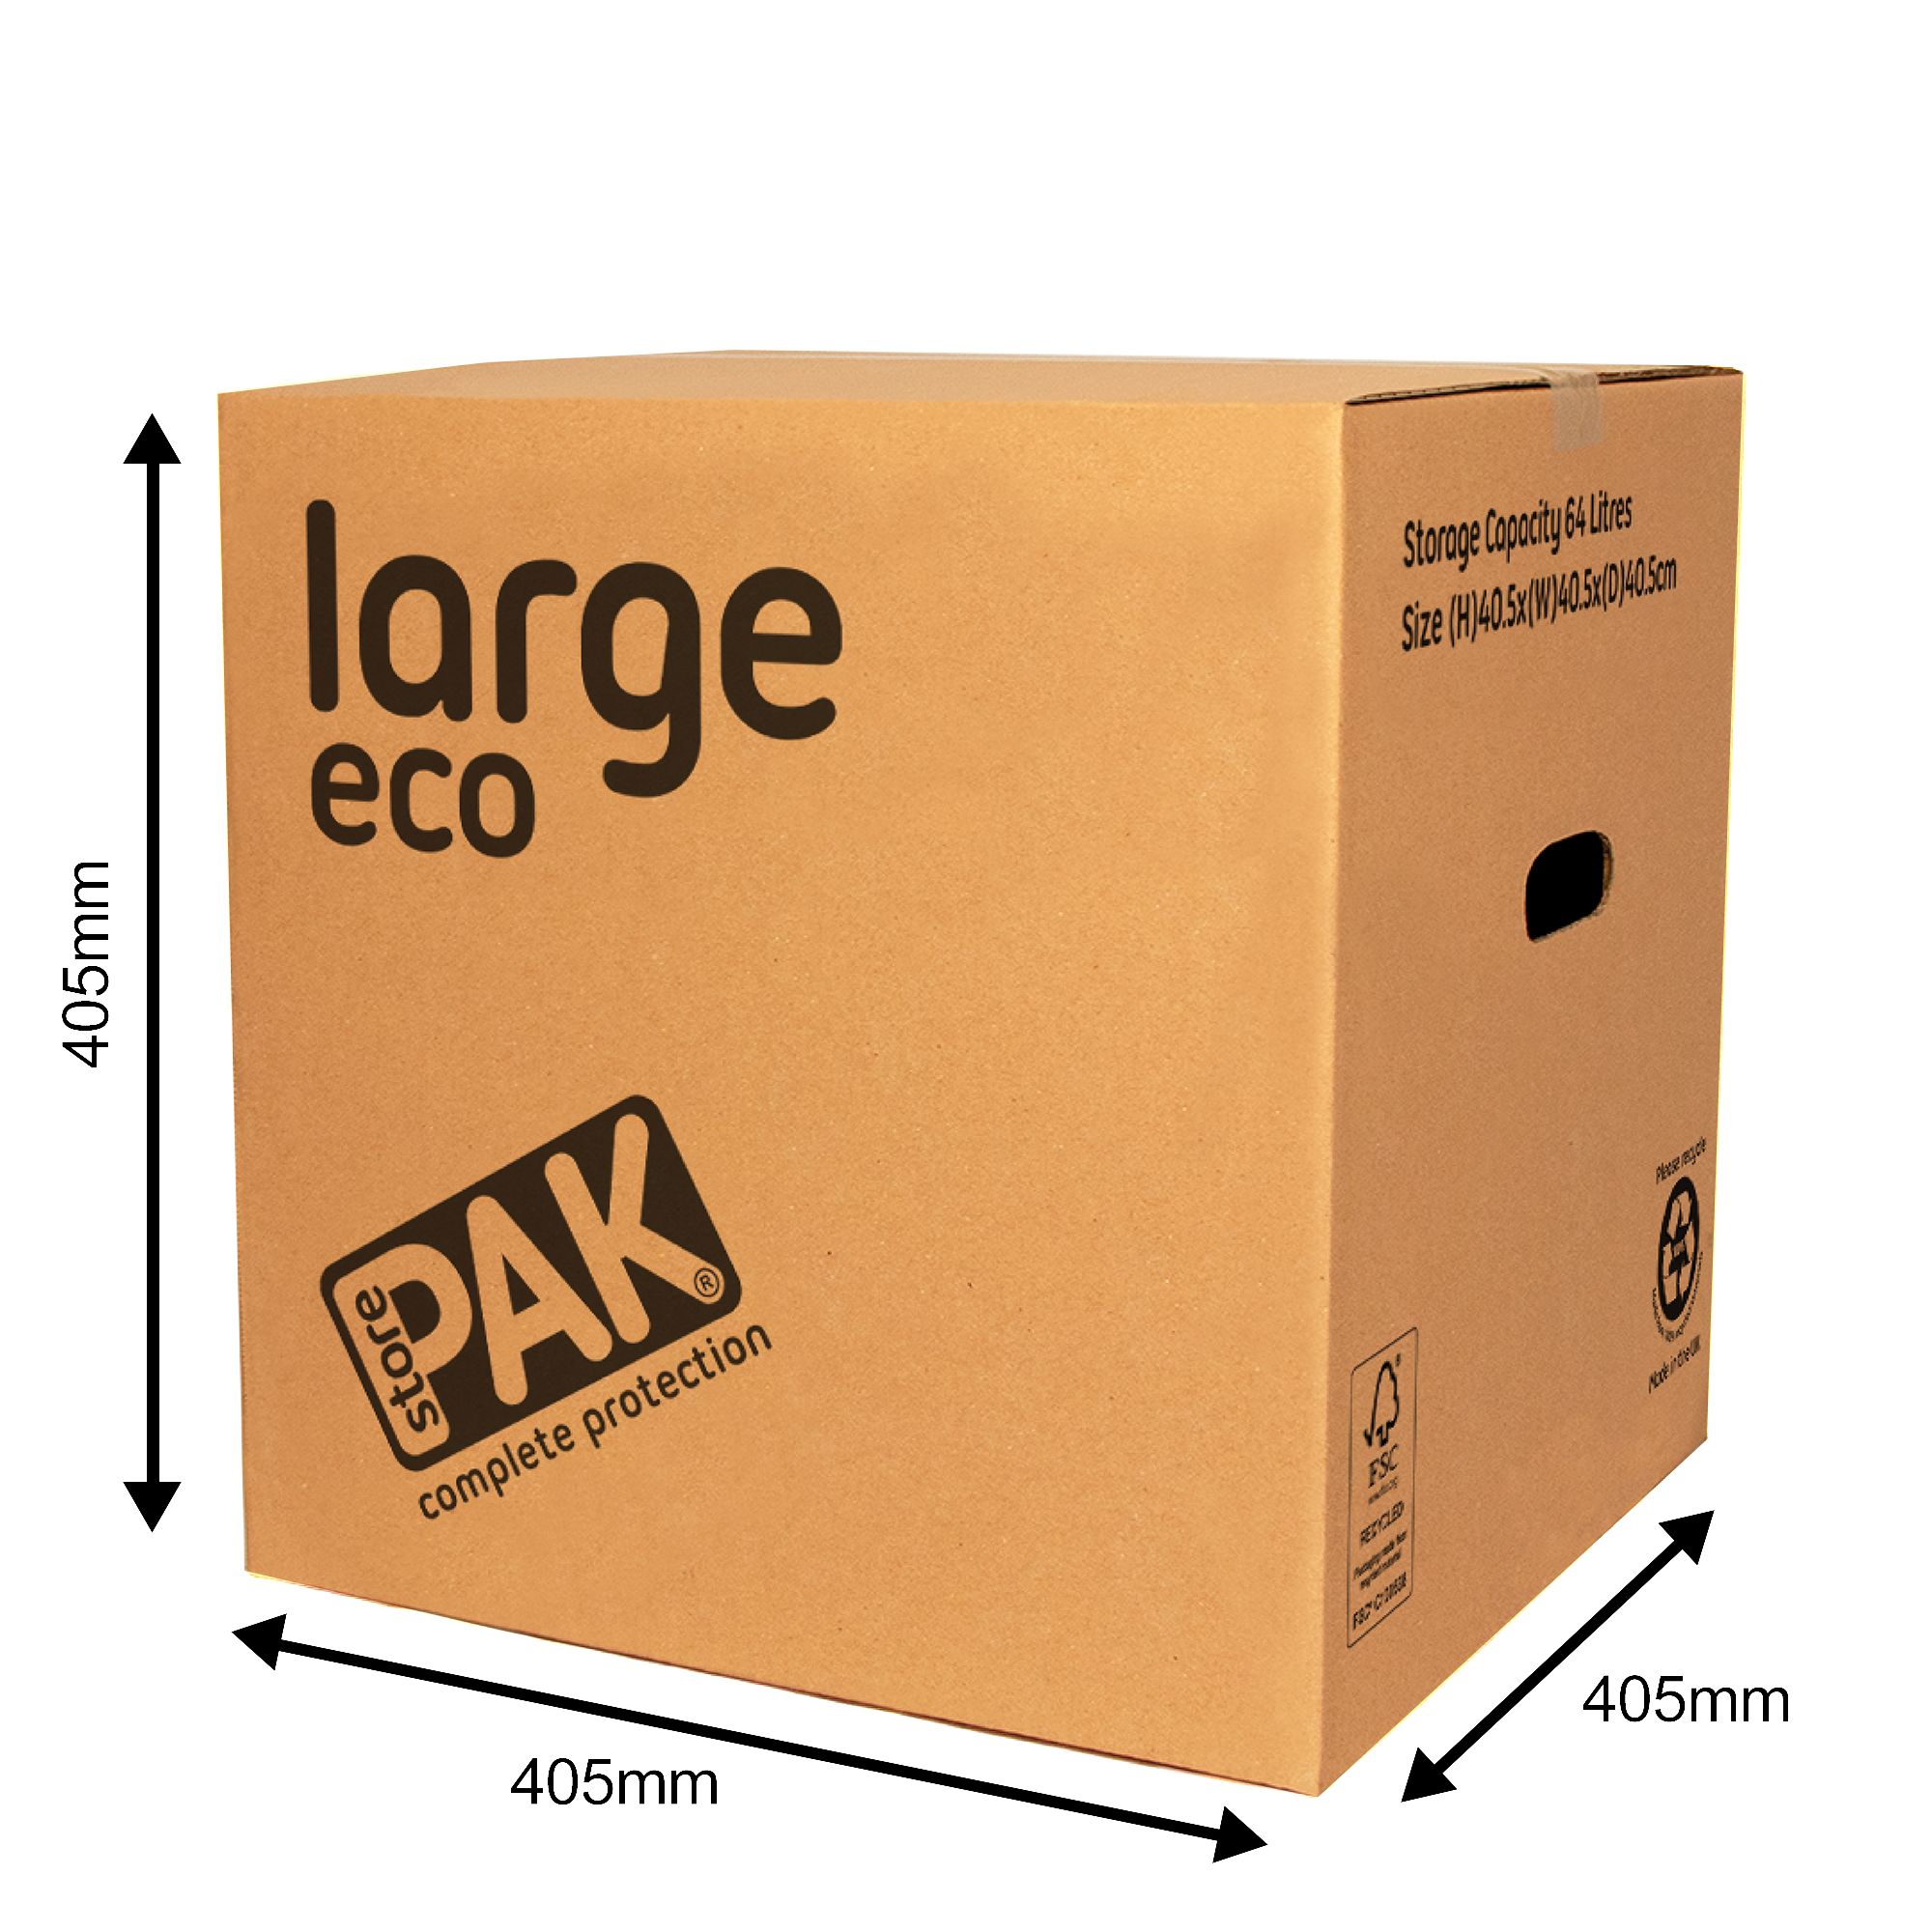 StorePAK Large Cardboard Moving box